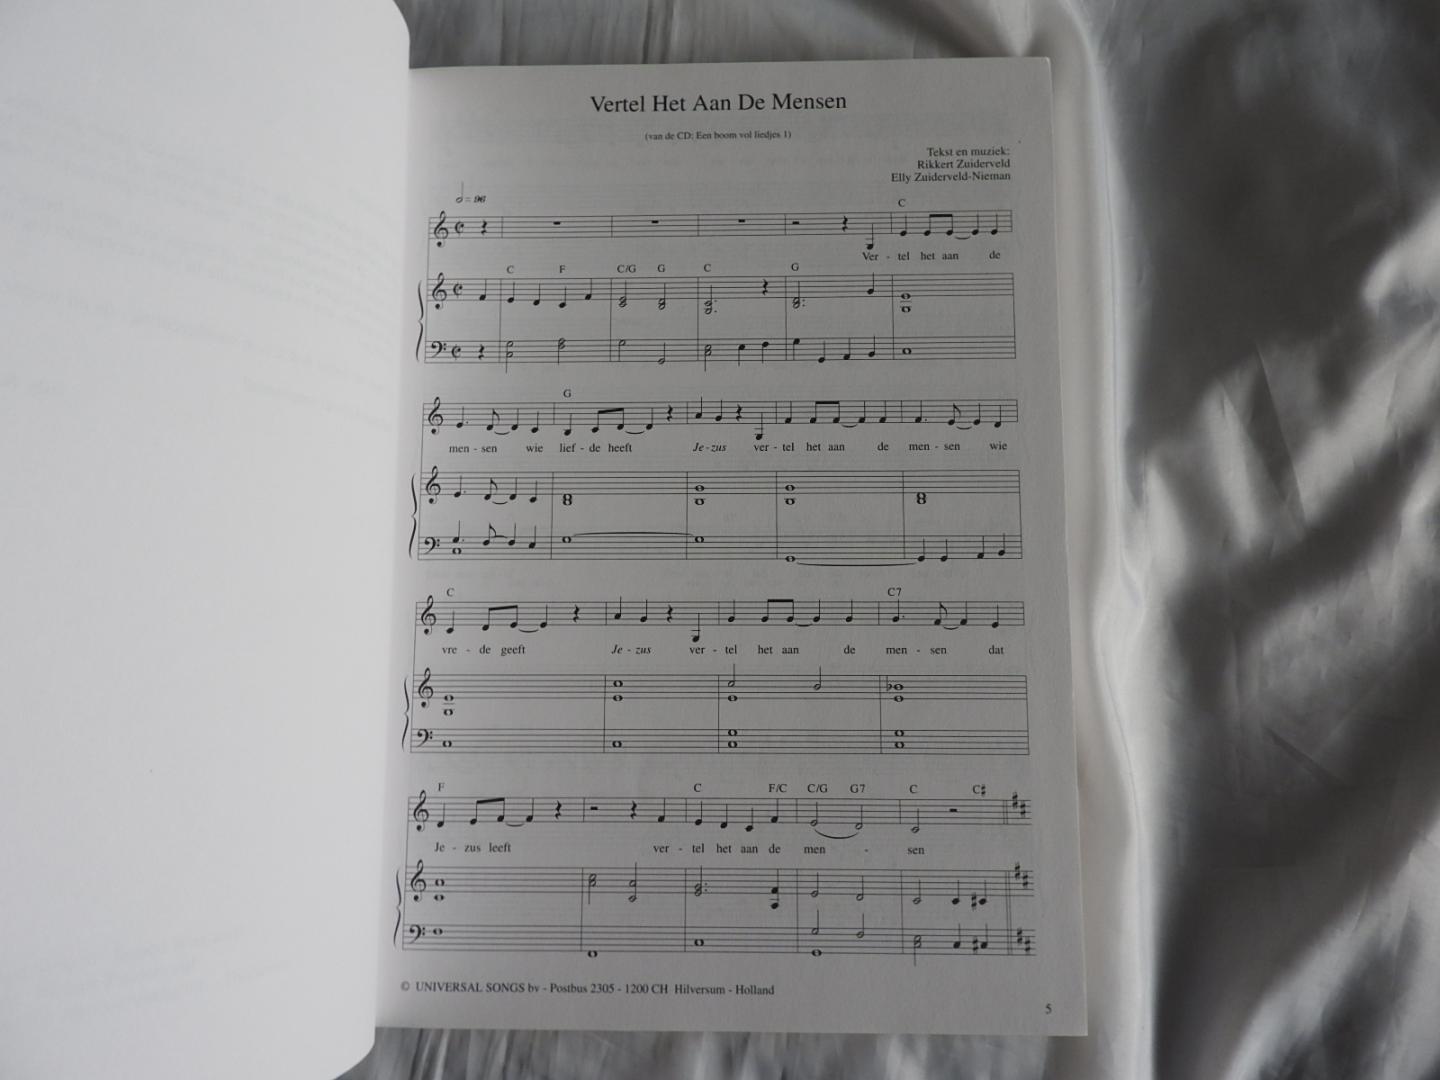 ELLY EN RIKKERT  zuiderveld - verzamelde kinderliedjes van ELLY EN RIKKERT  - een BOEK boom VOL LIEDJES DEEL 1 met Piano begeleiding. - songboek